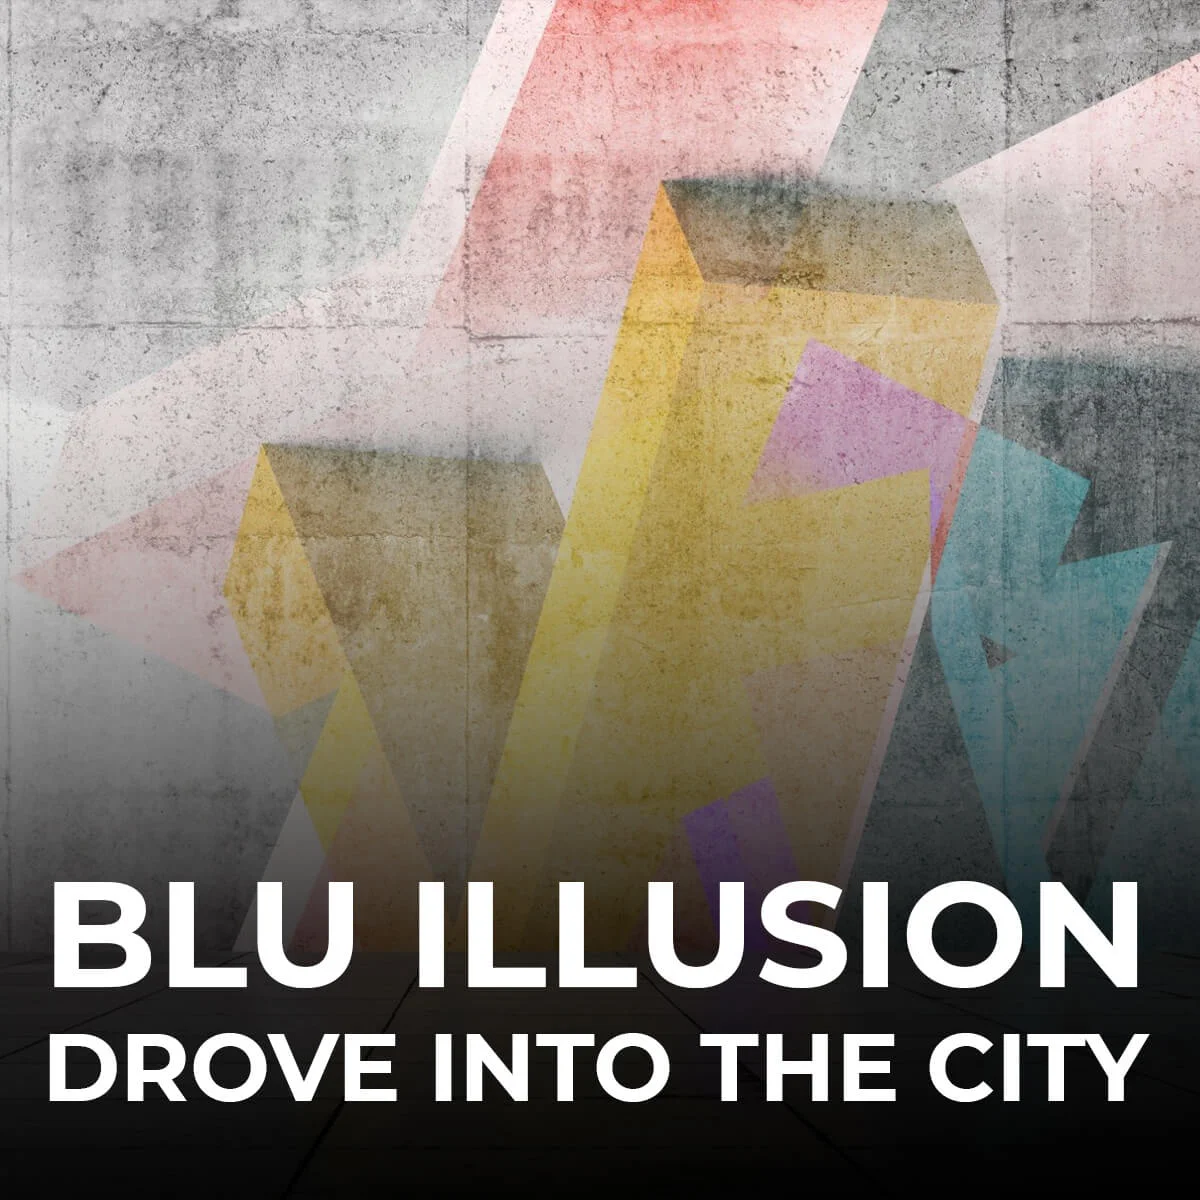 Drove-into-the-City - Blu Illusion Music